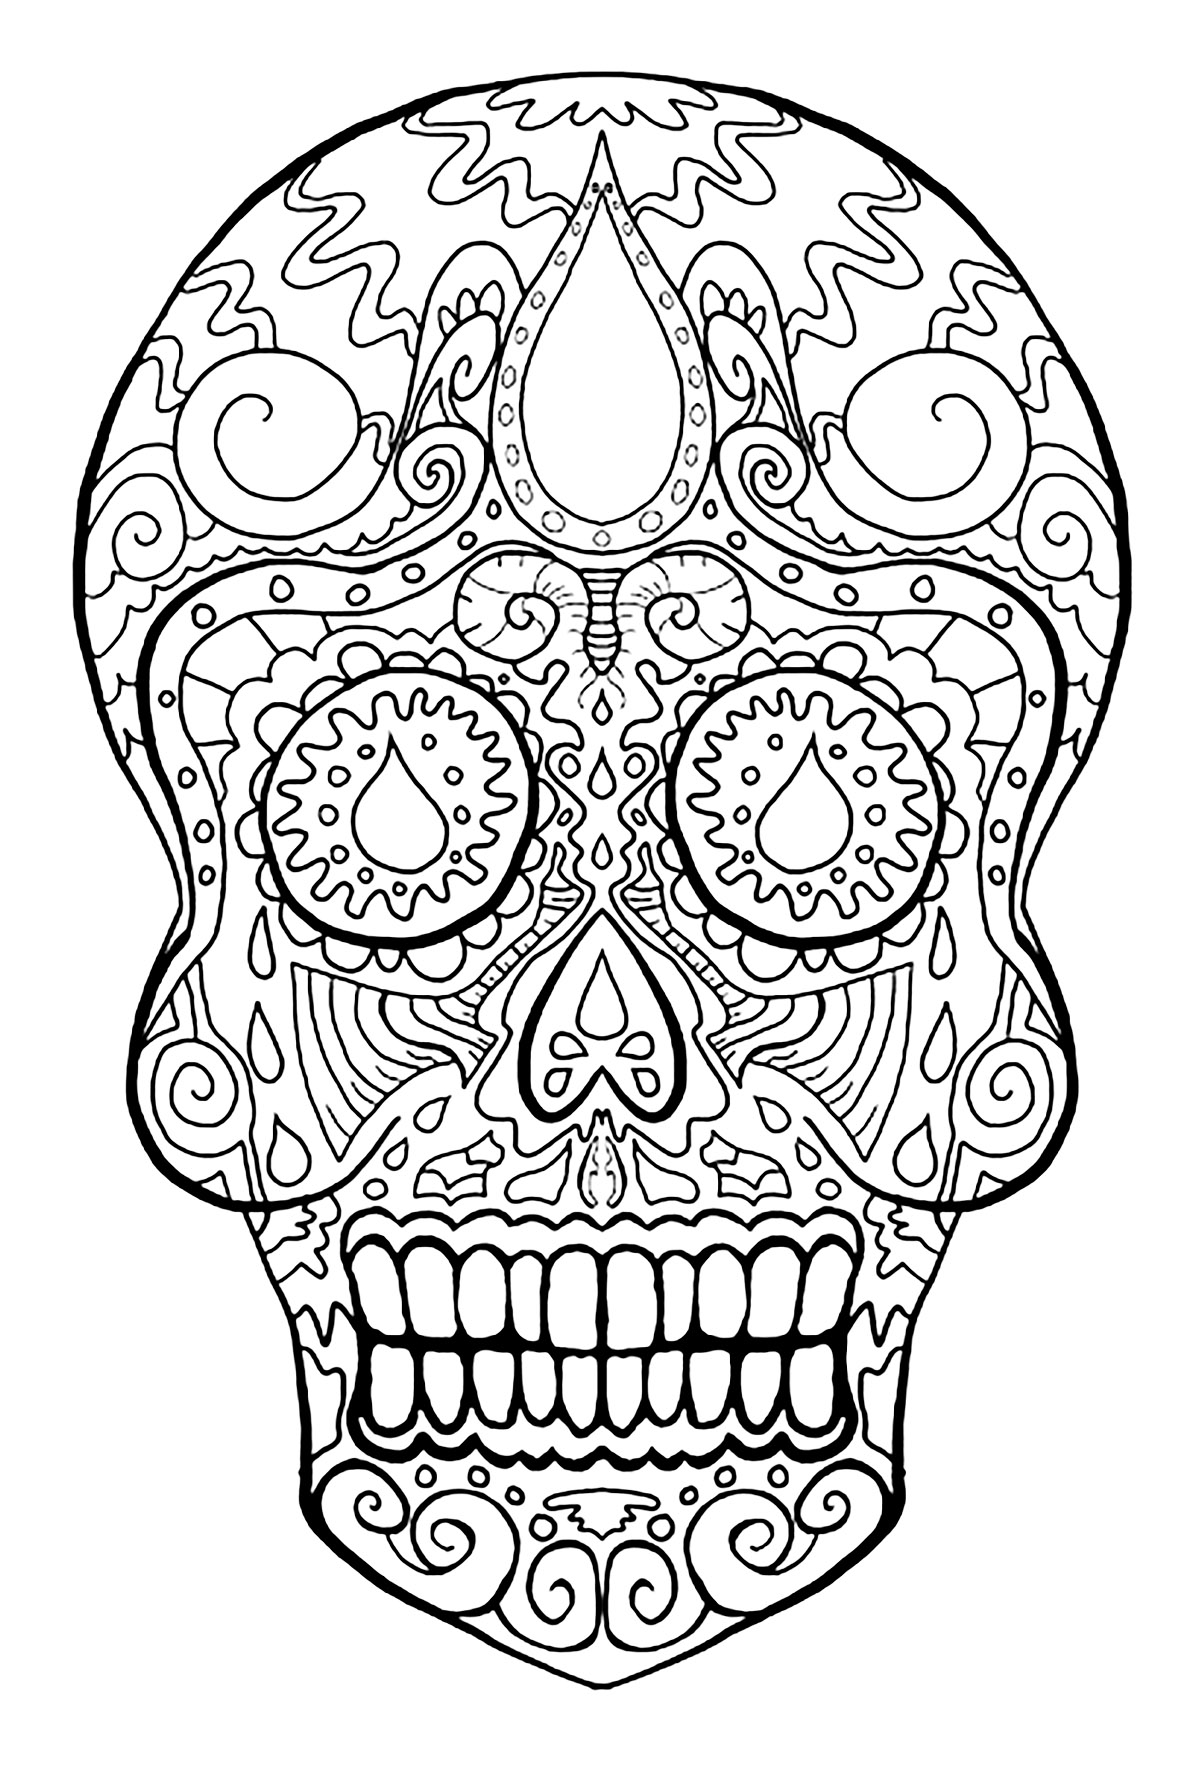 Schädel als Symbol für den mexikanischen Feiertag 'Dia de los Muertos. Diese Malvorlage ist inspiriert von dem mexikanischen Fest Dias de los Muertos. Sie stellt einen Totenkopf dar, ein wesentliches Symbol für dieses Fest.
